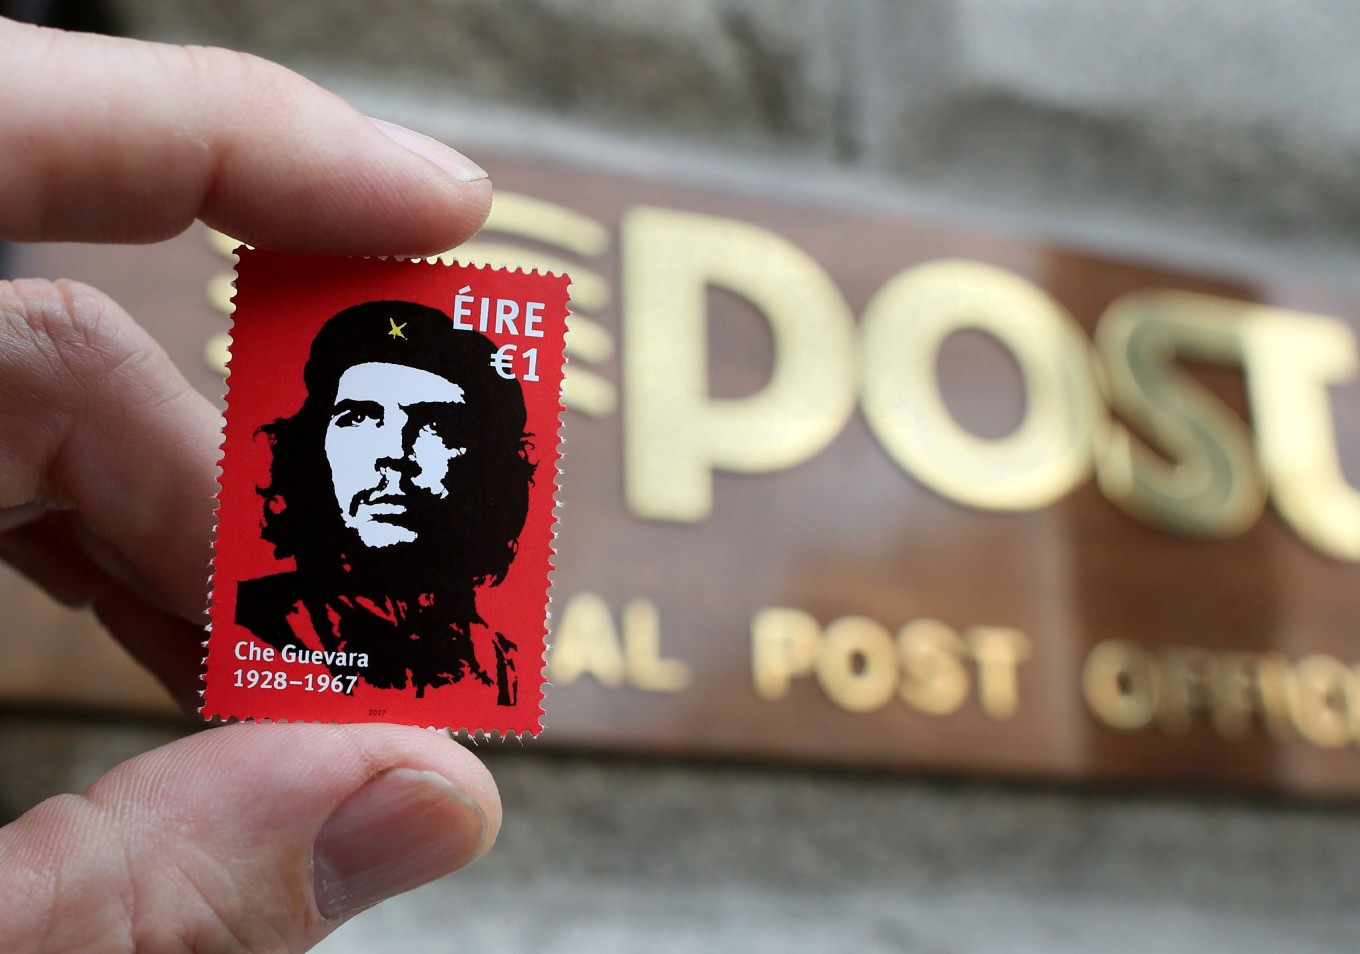 Ιρλανδία: Γραμματόσημο με τον Τσε γίνεται ανάρπαστο και προκαλεί αντιδράσεις